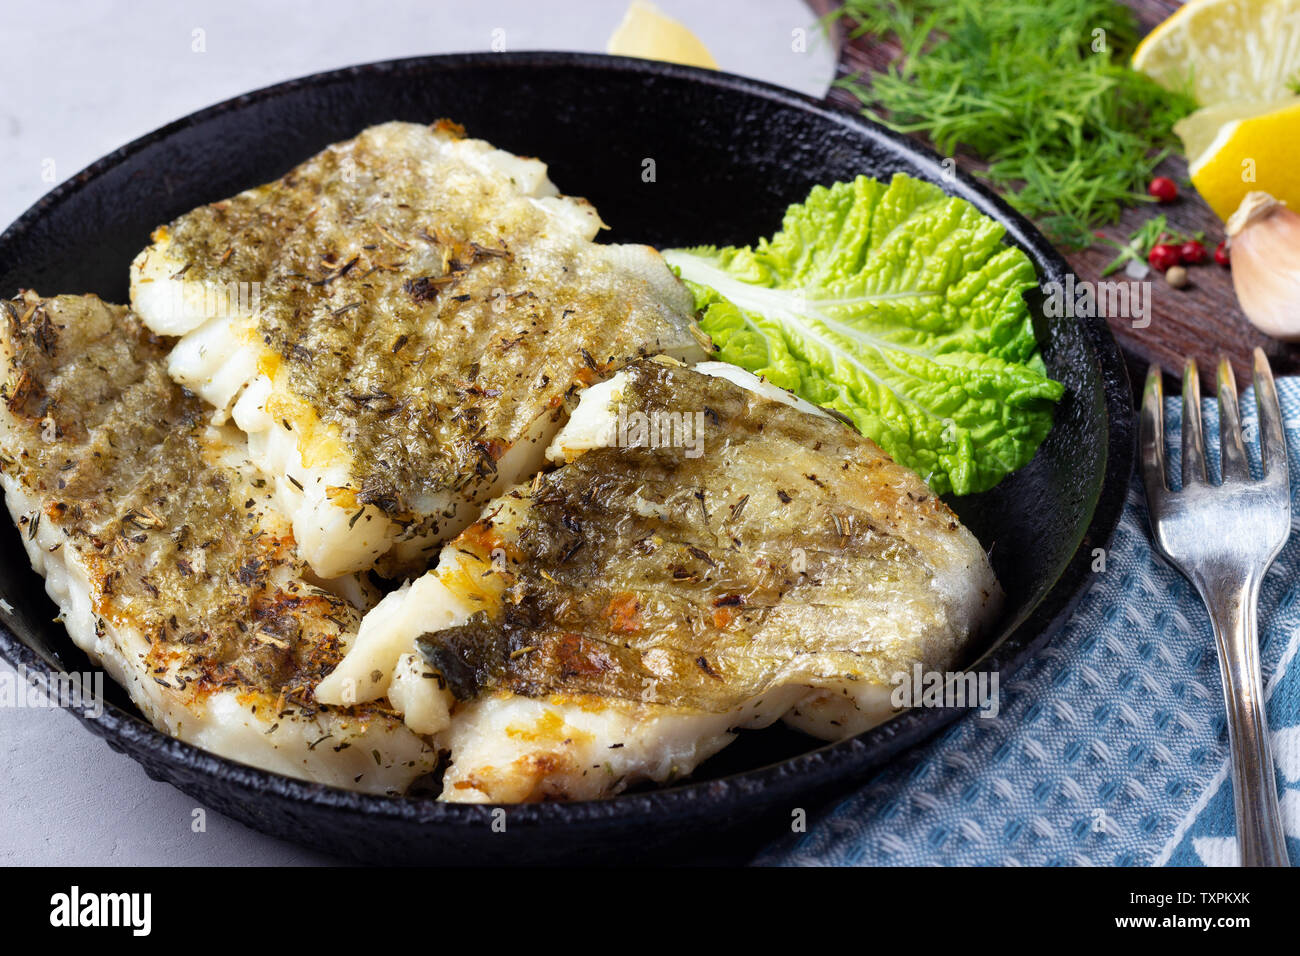 Morue frite filet de poisson aux épices dans une poêle en fonte Banque D'Images